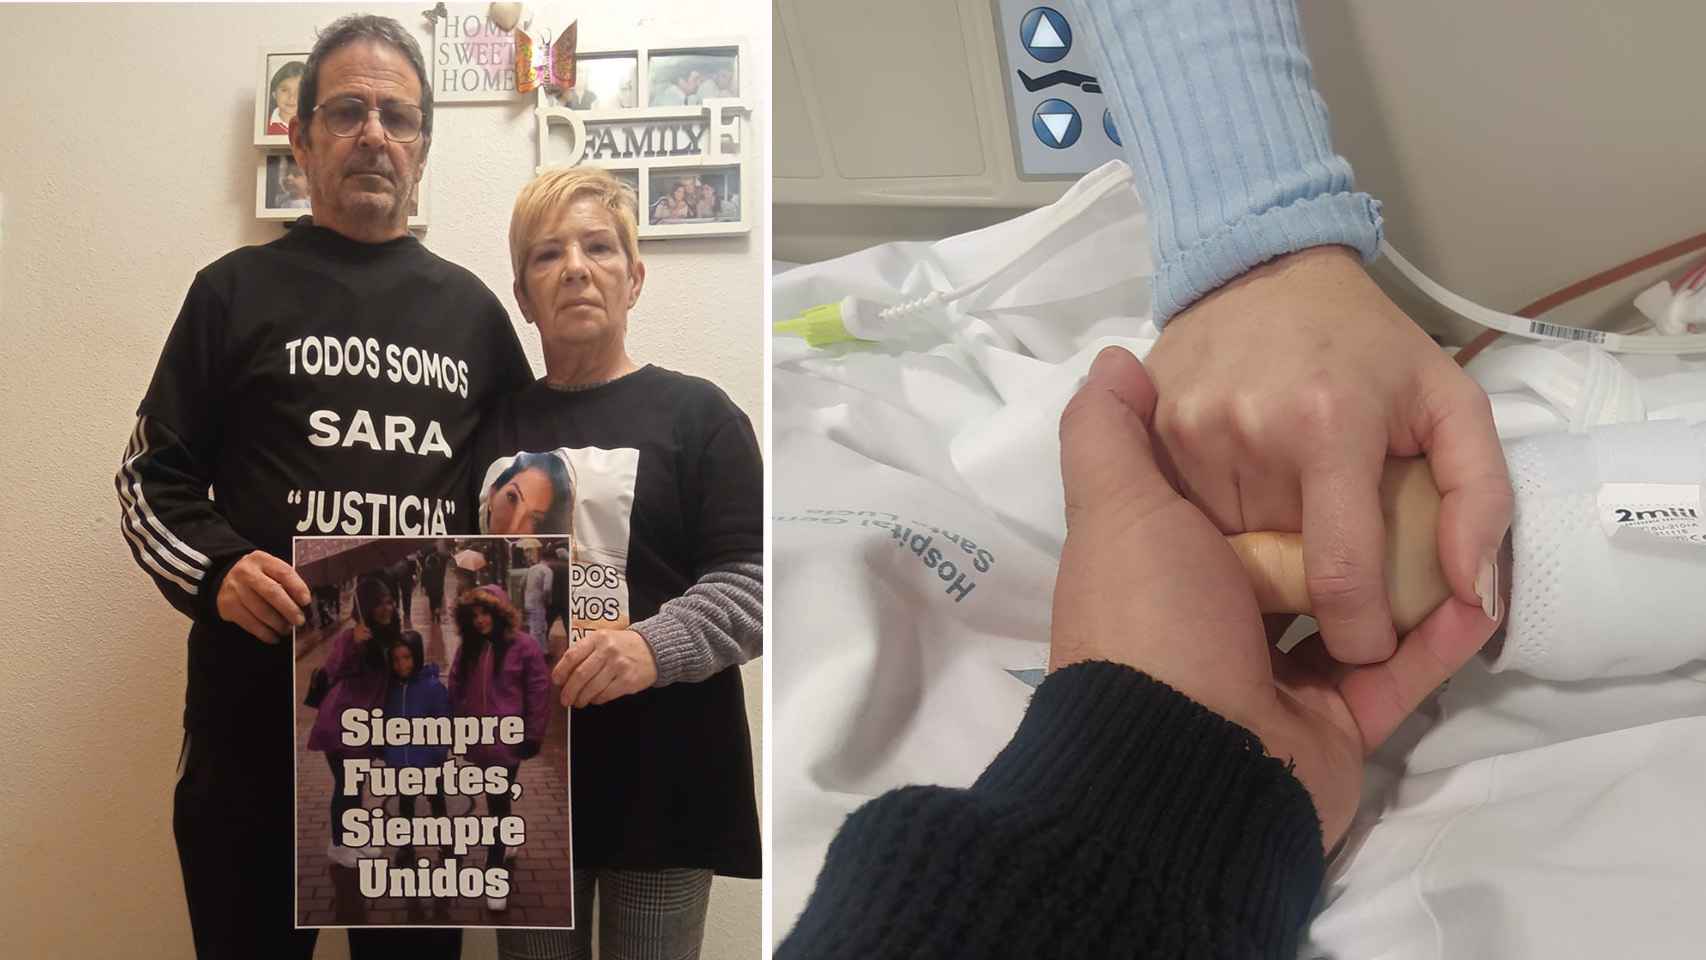 Damián y Felisa, los padres de Sara, con camisetas de apoyo a su hija. Al lado, los hermanos de Sara sujetándole la mano en el Hospital Santa Lucía de Cartagena.